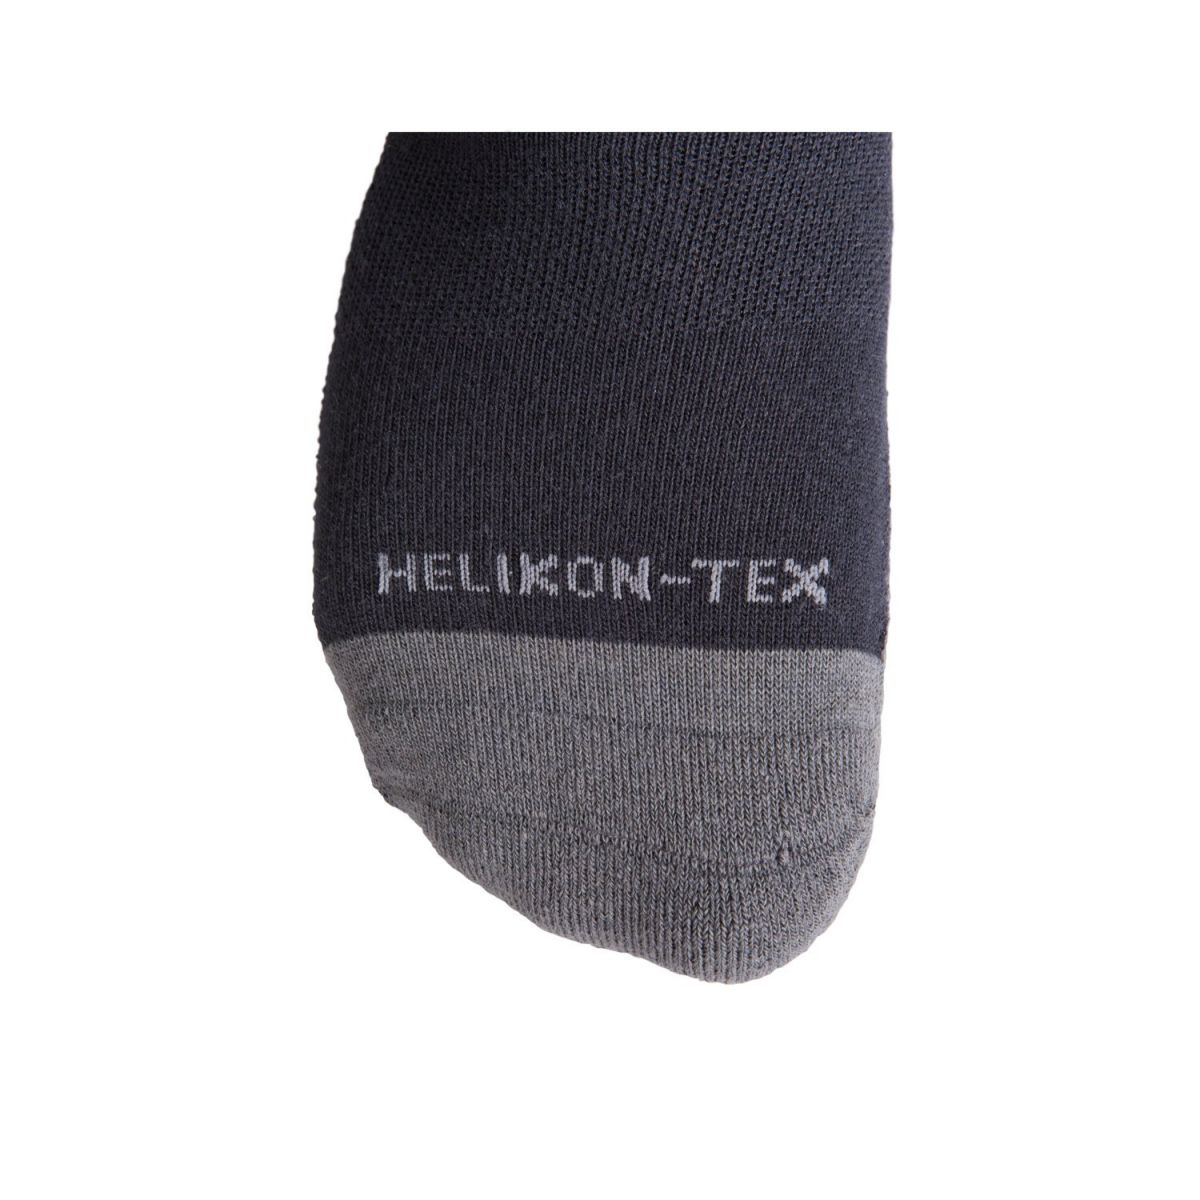 Носки треккинговые Helikon-Tex Mediumweight socks черно-серые с шерстью мериноса. Размер М 3